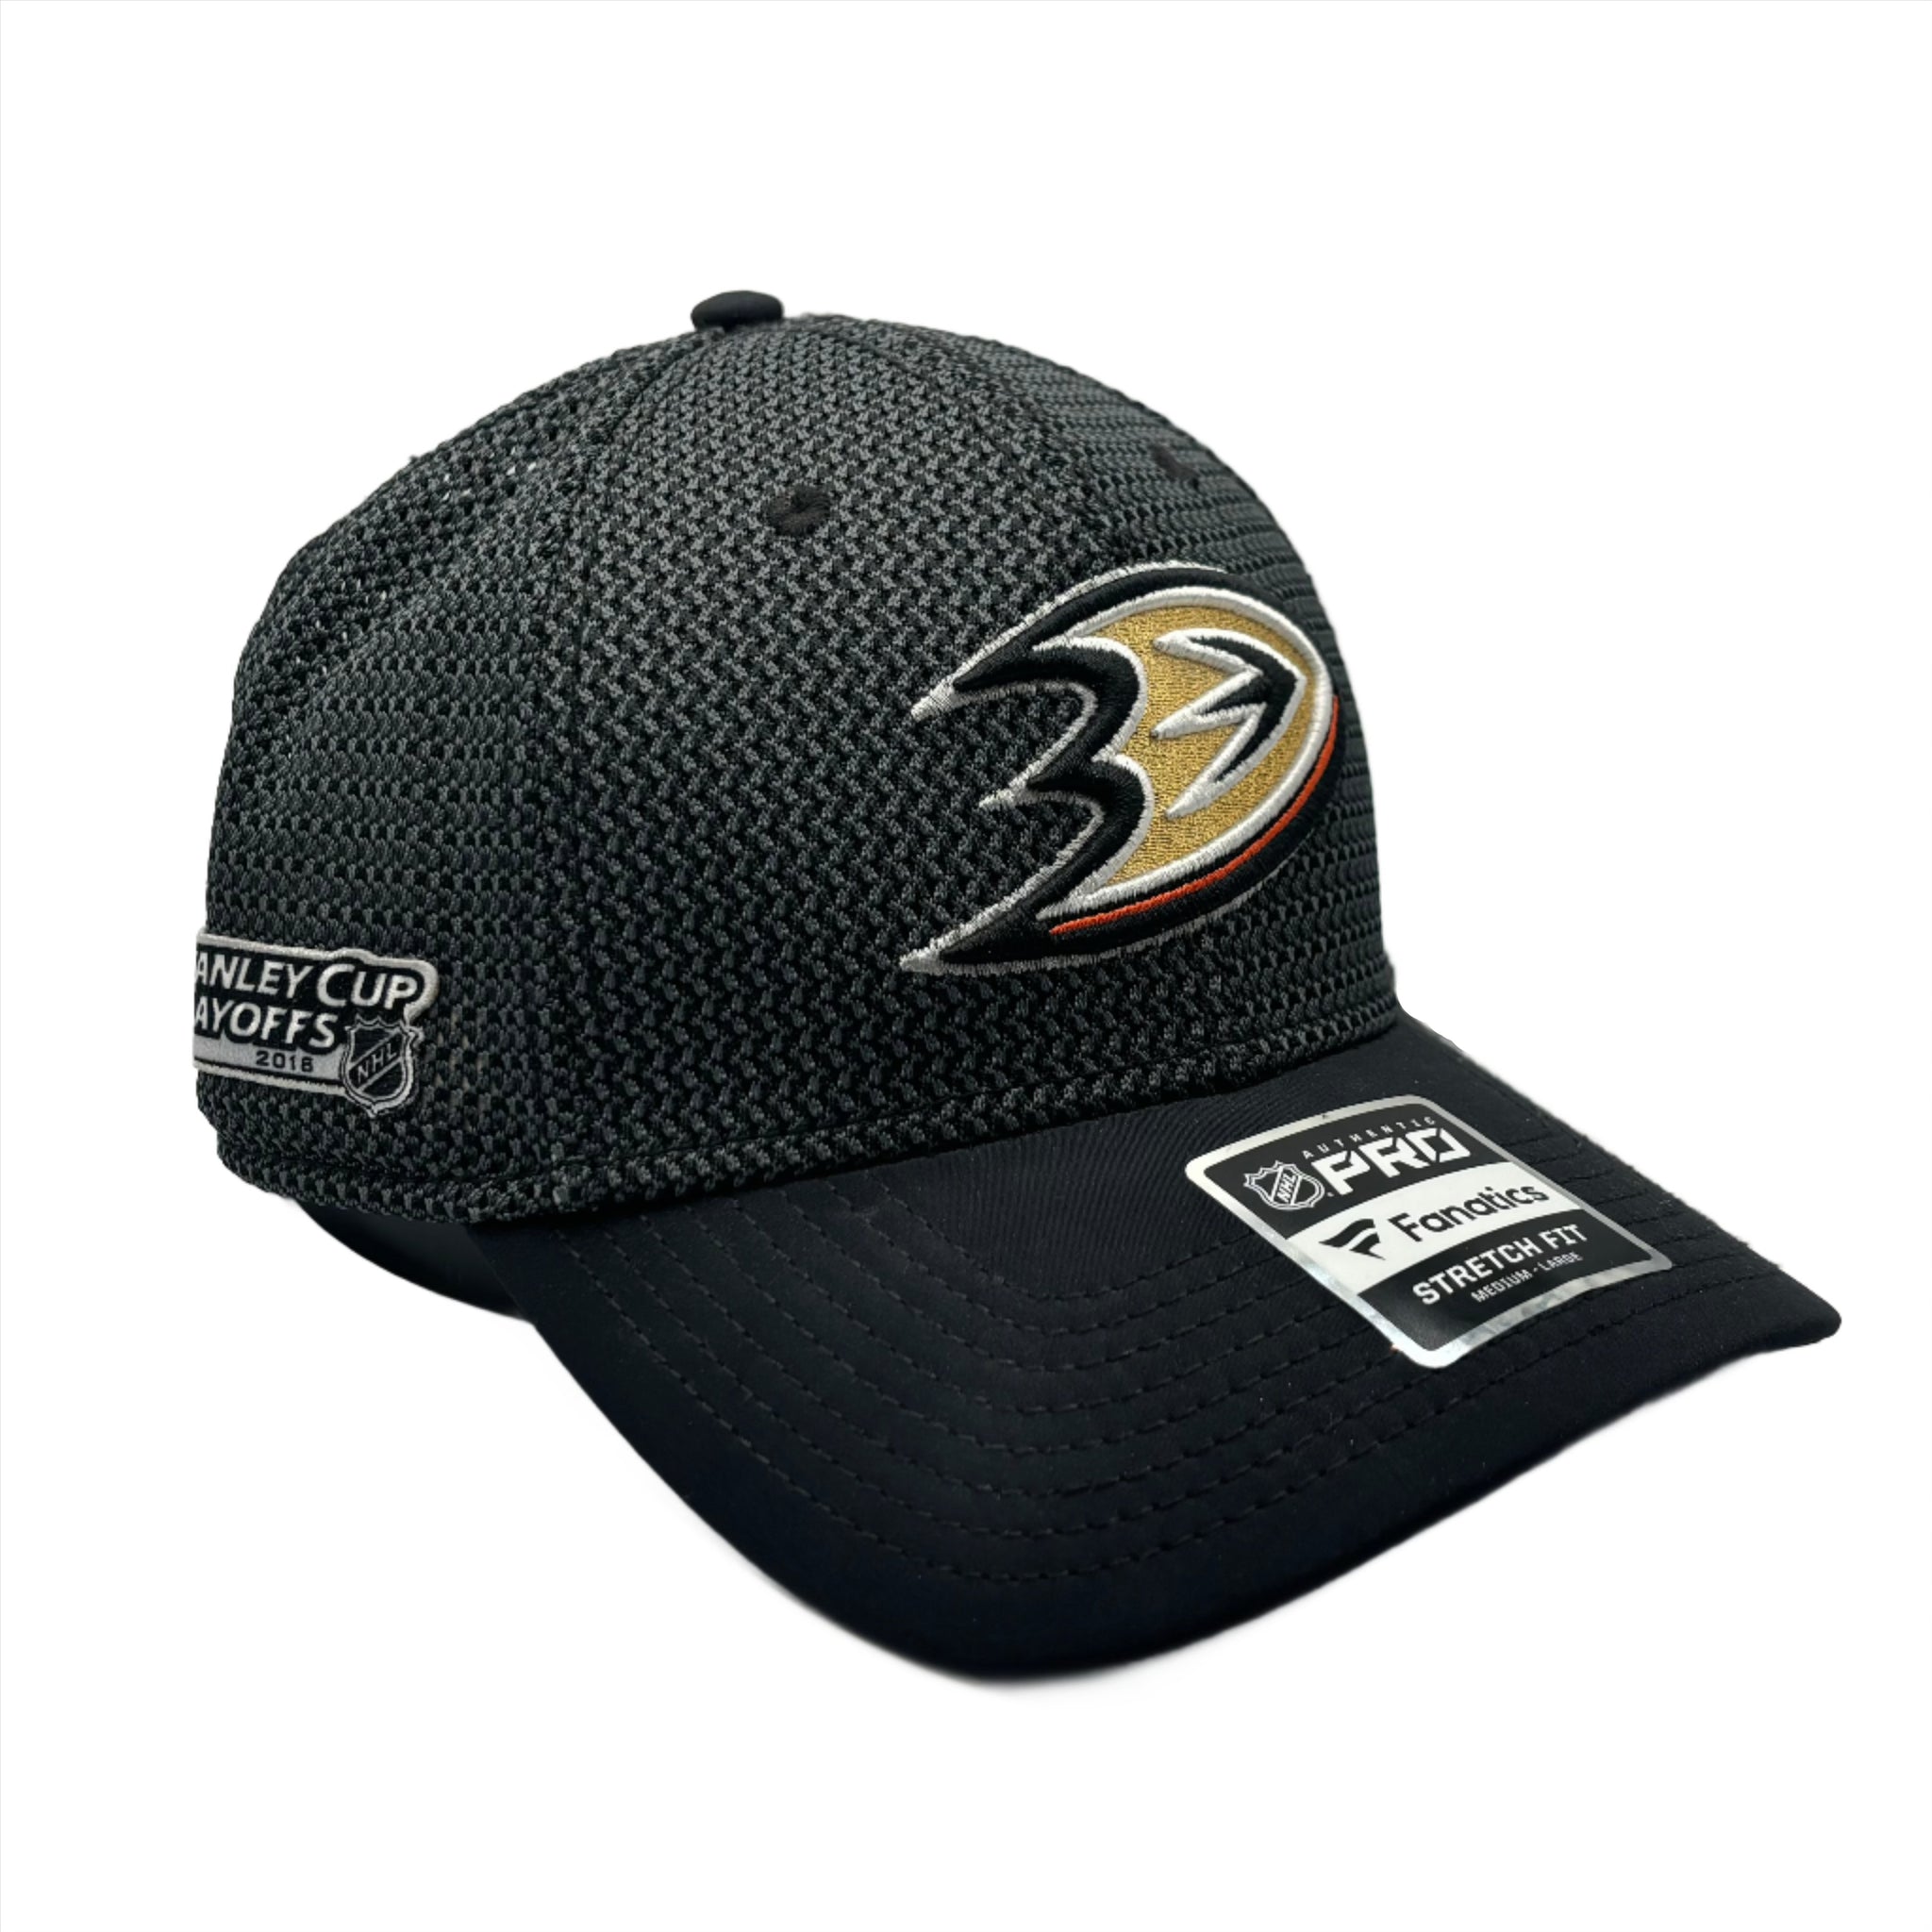 Anaheim Ducks Fanatics Authentic Pro 2018 Stanley Cup Playoffs Grey Mesh Stretch Fit Hat